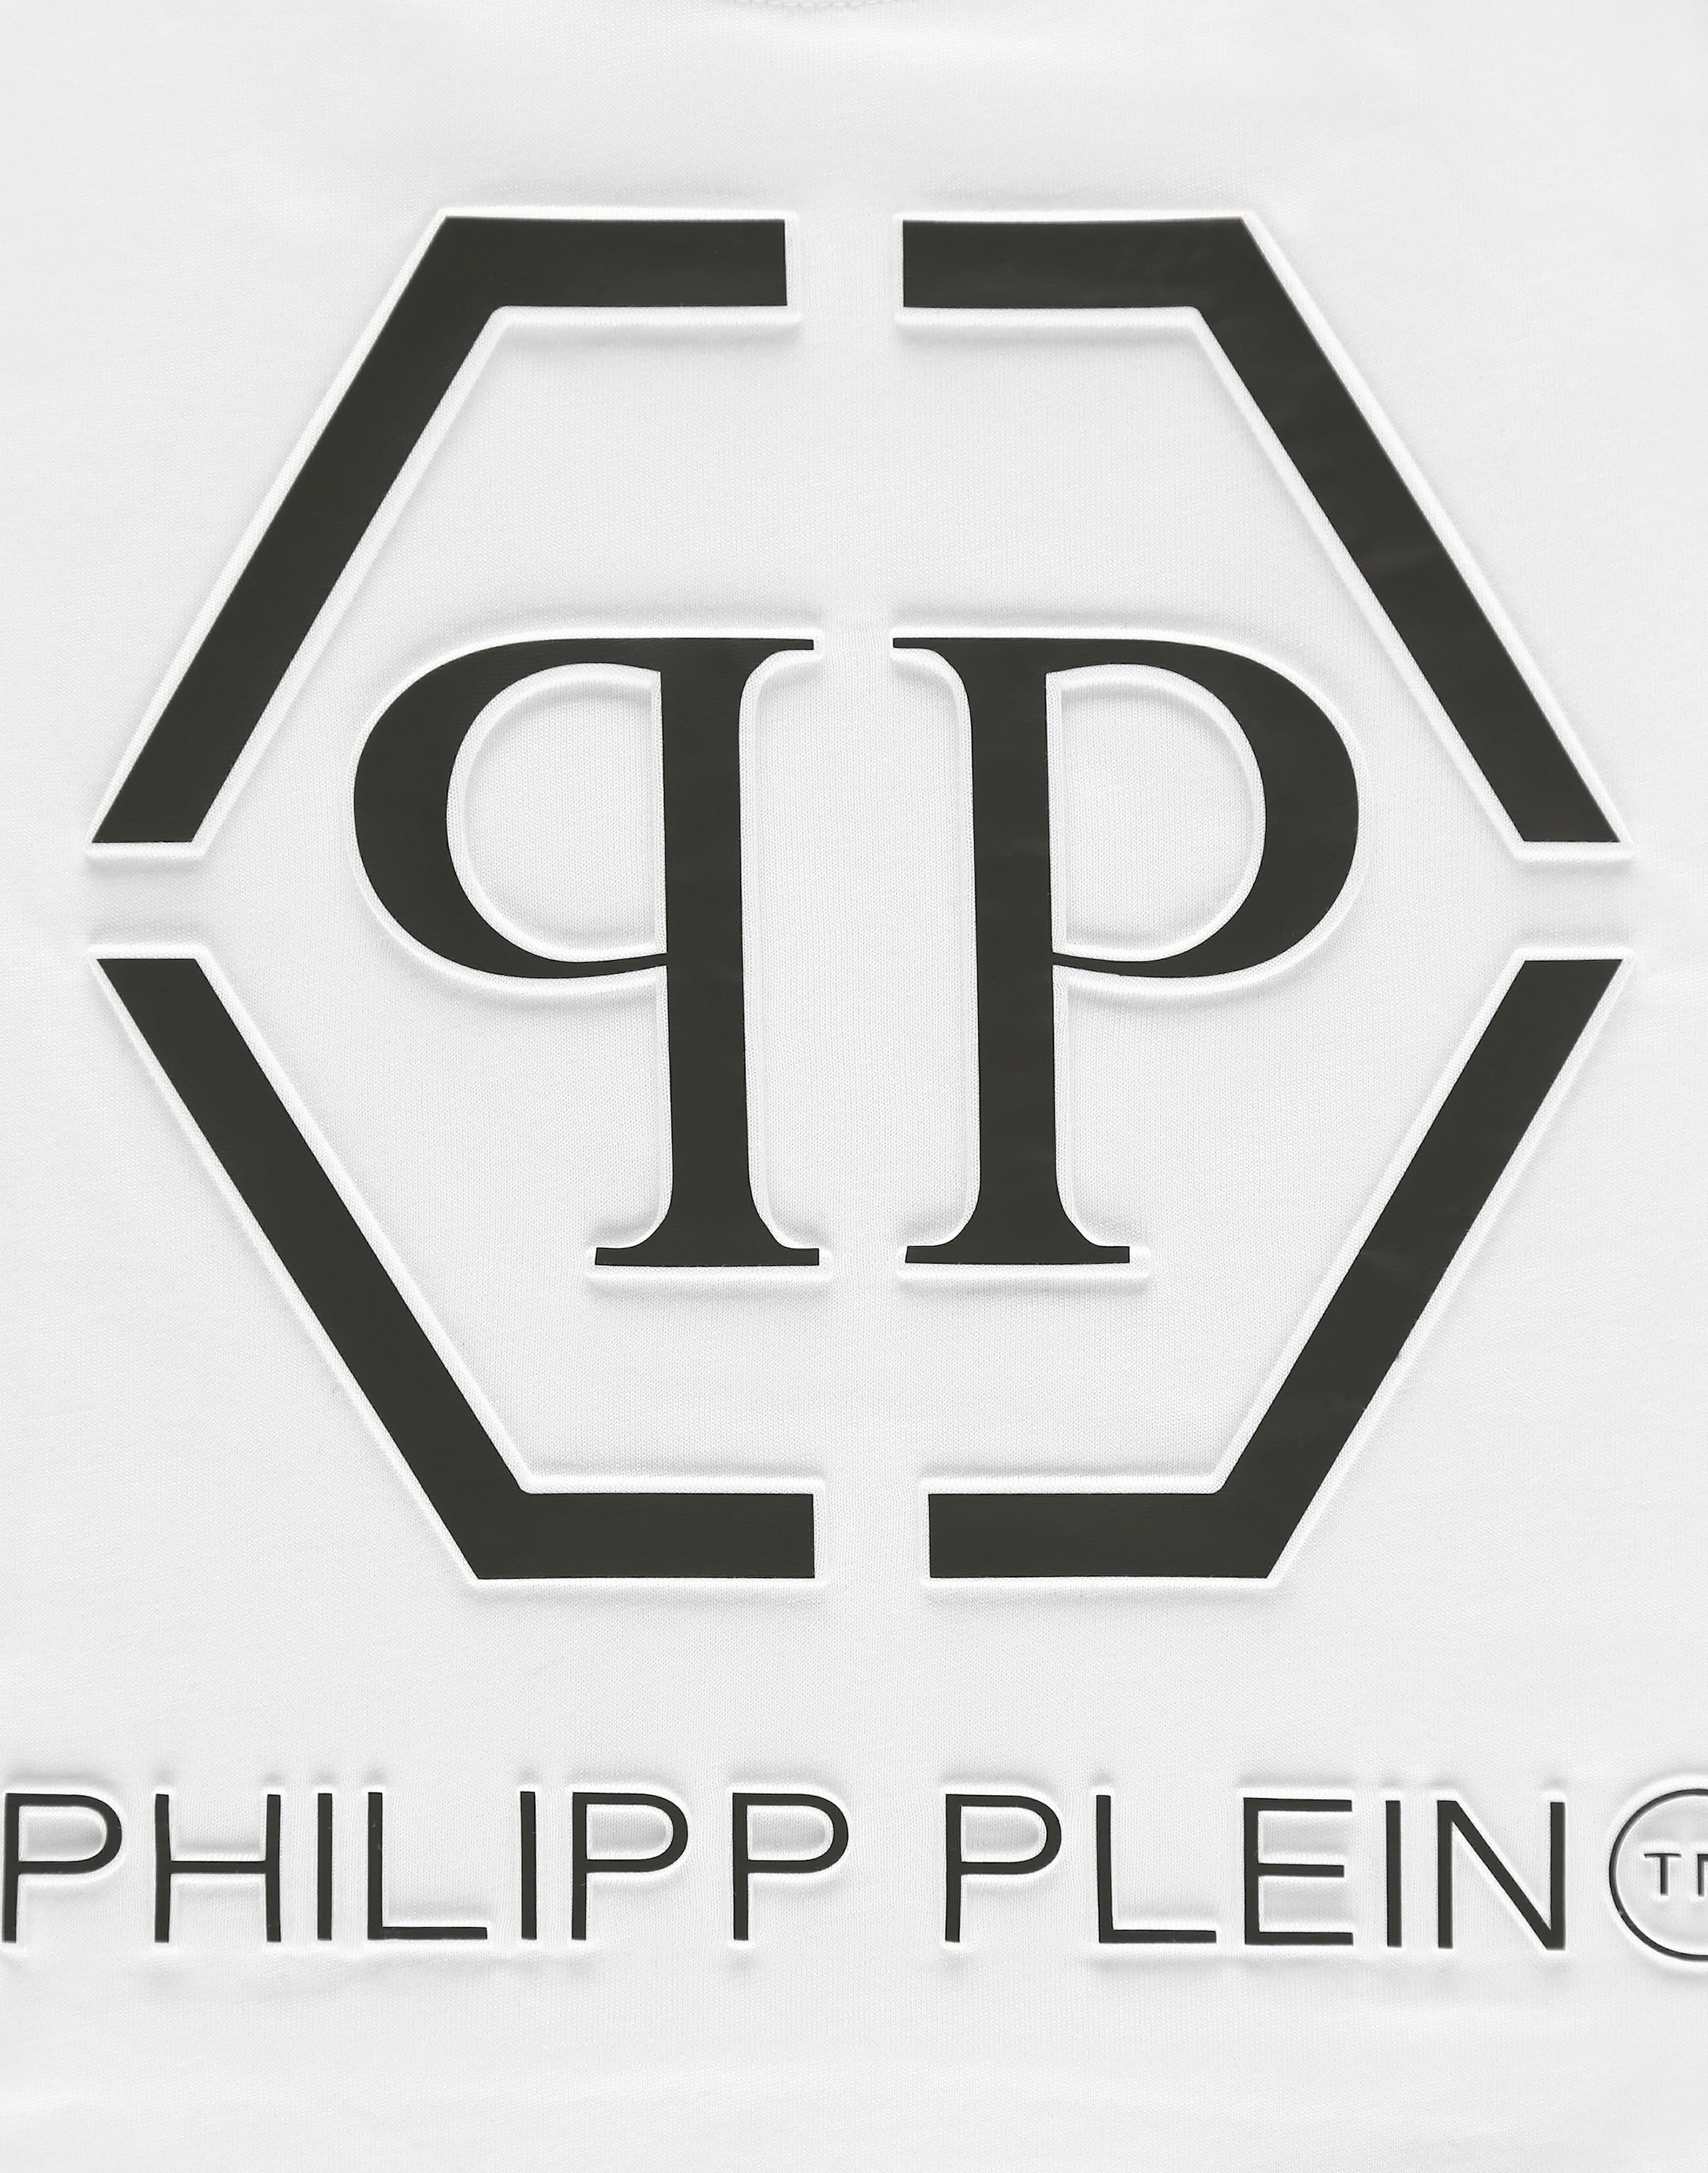 Philipp Plein Home Collection by Eichholtz - Issuu